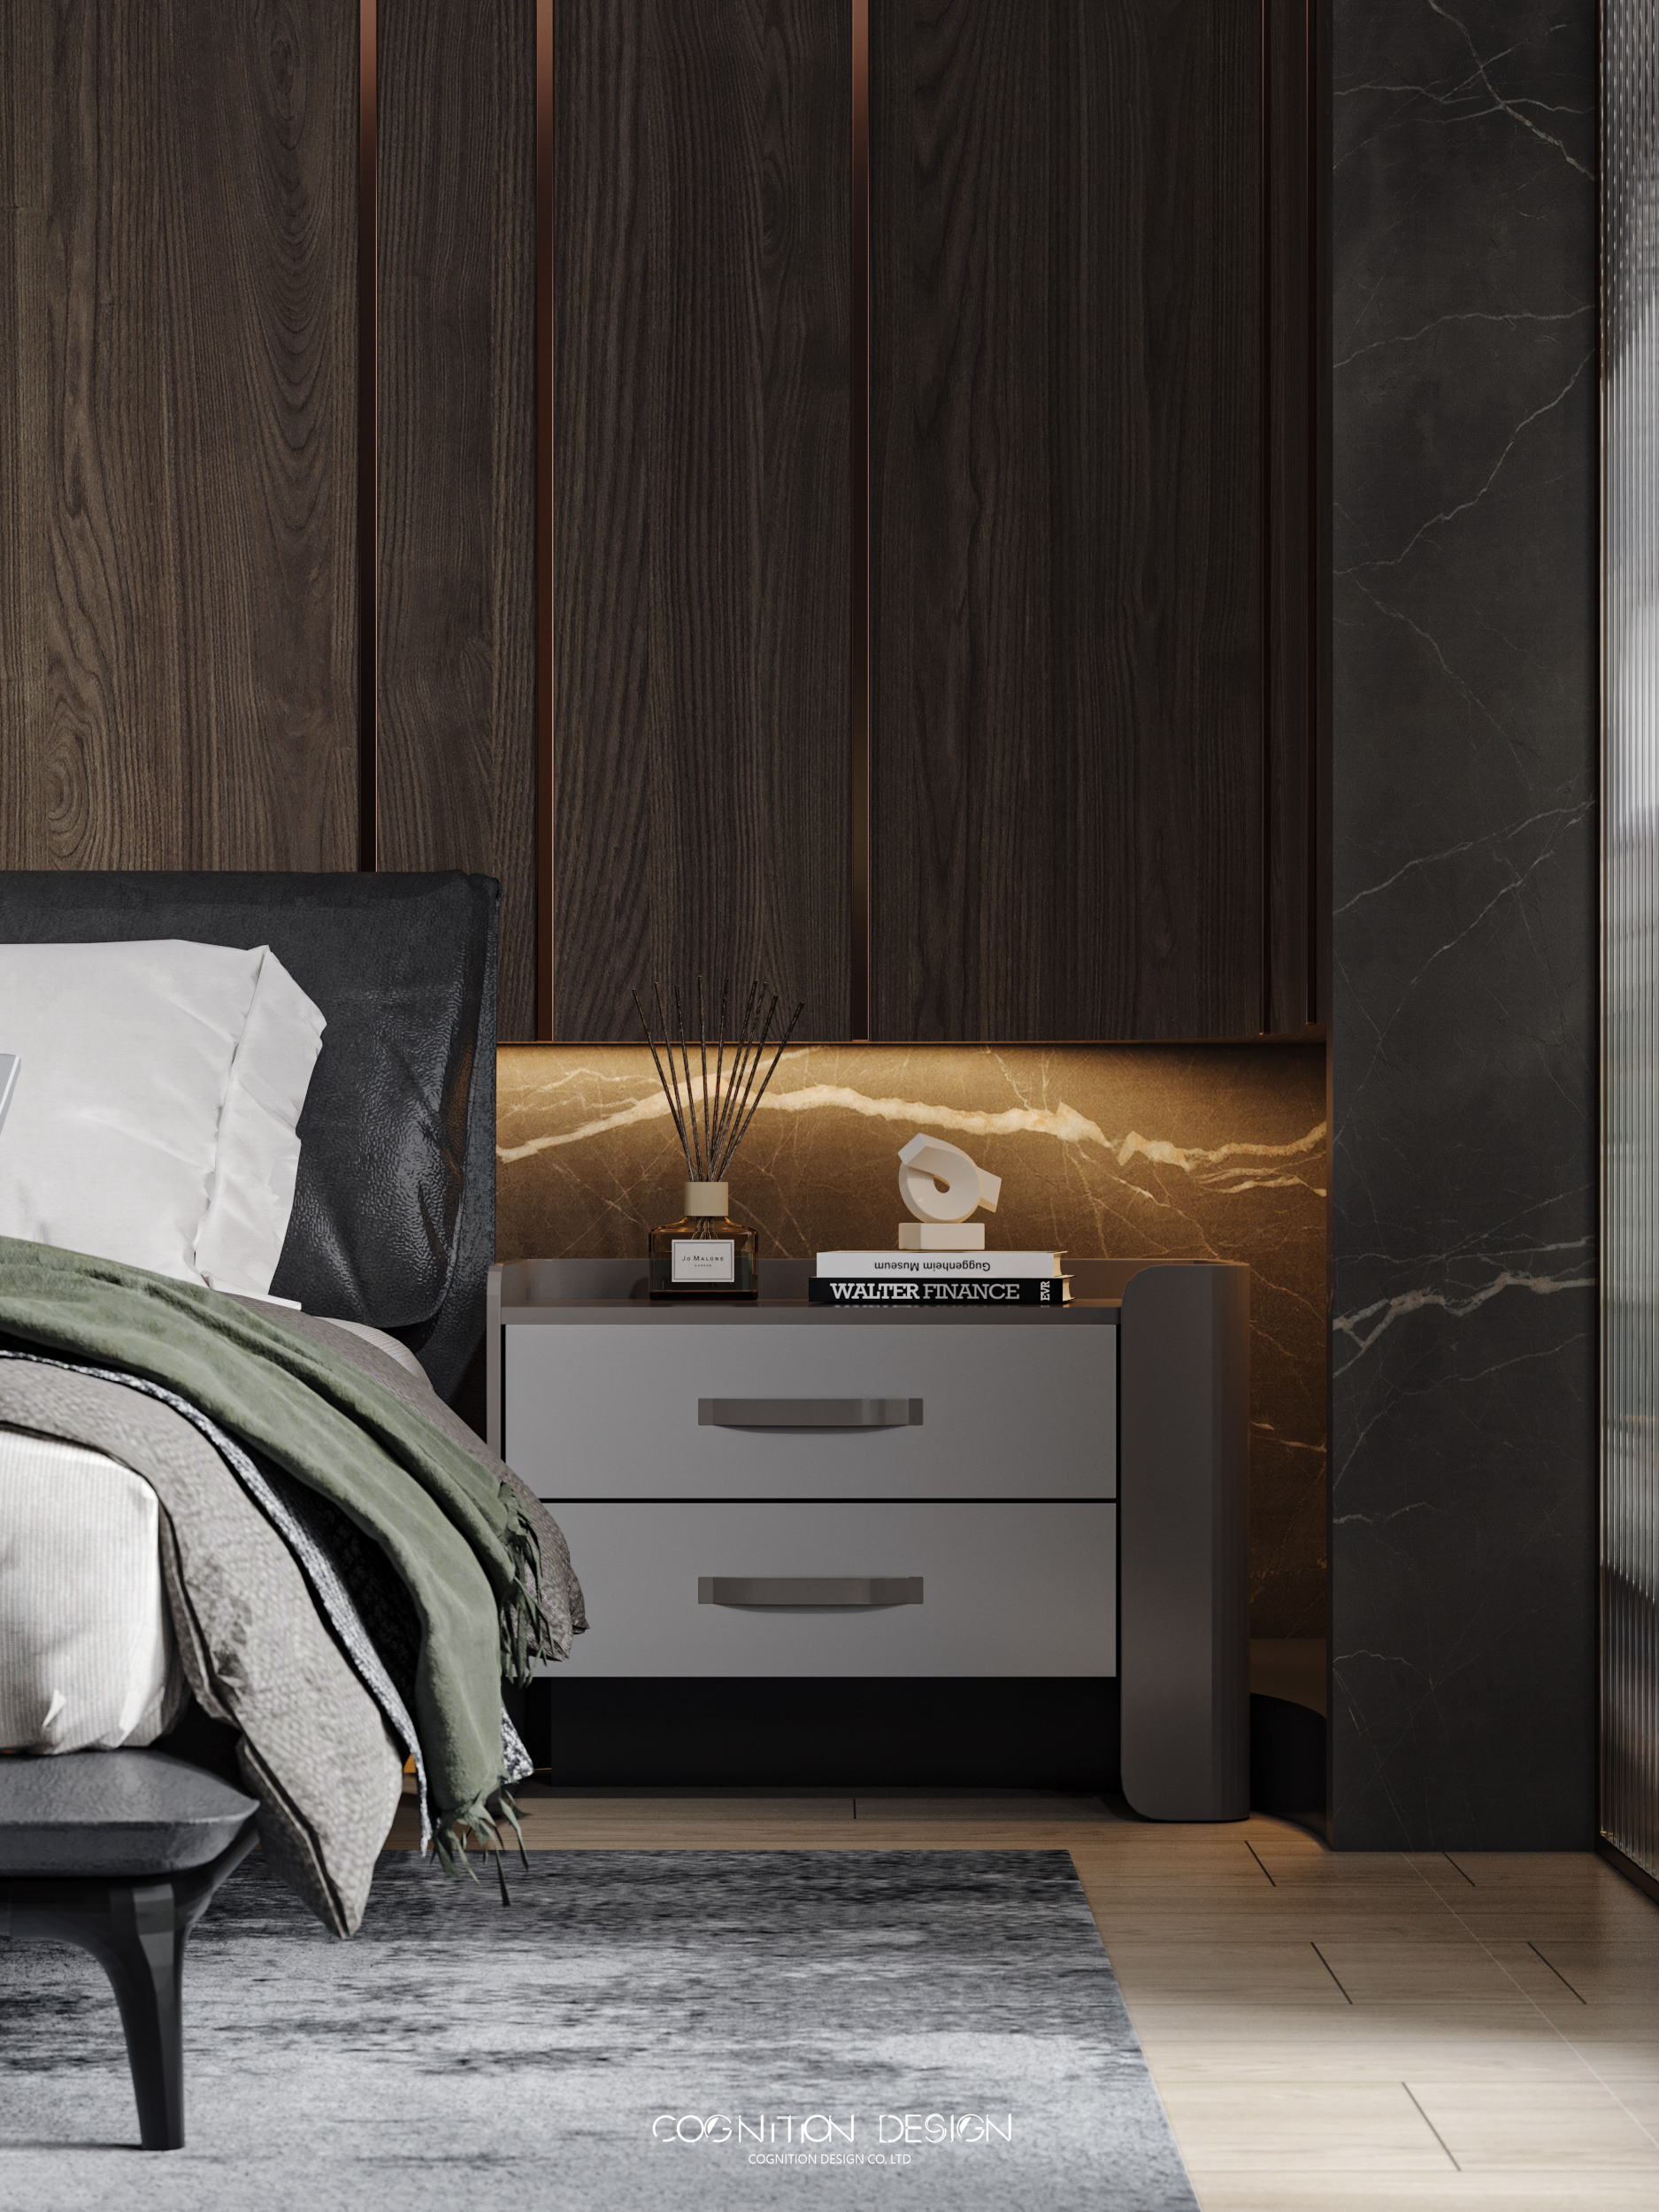 新中式風格建議選用簡約而不失現代感的家具